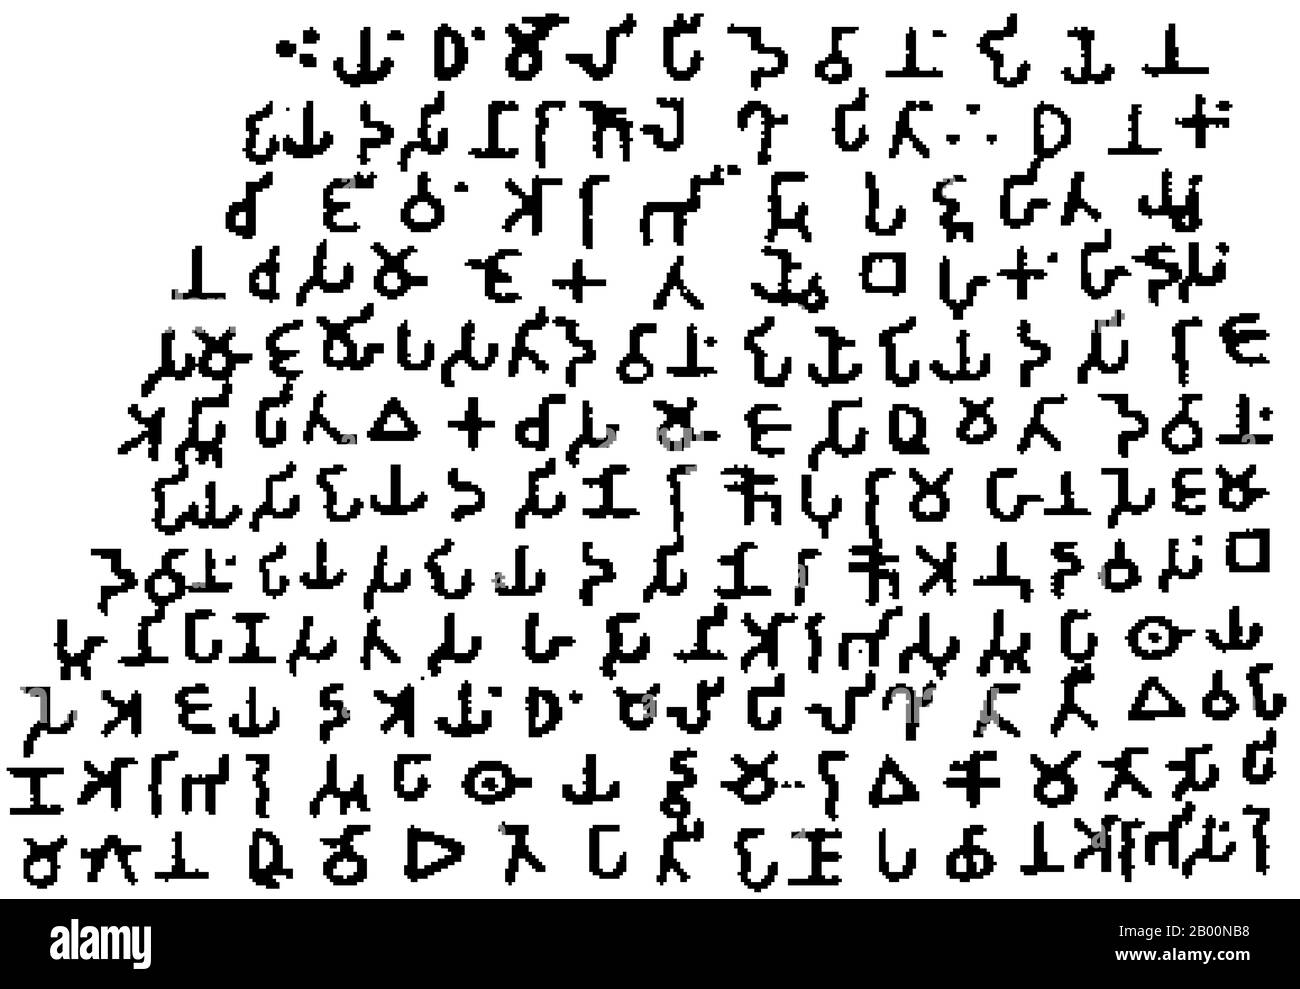 Indien: Brahmi-Schrift. Ashokas Felsenedikt bei Girnar, 3. Jahrhundert v. Chr. Brāhmī ist der moderne Name, der den ältesten Mitgliedern der brahmischen Schriftfamilie gegeben wird. Die bekanntesten Brāhmī-Inschriften sind die gesteinten Edikte von Ashoka in Nord-Zentral-Indien, datiert auf das 3. Jahrhundert v. Chr.. Diese werden traditionell als die frühesten bekannten Beispiele für Brāhmī Schreiben, obwohl jüngste Entdeckungen darauf hindeuten, dass Brāhmī etwas älter sein kann. Die Schrift wurde 1837 von James Prinsep, einem Archäologen, Philologen und Beamten der British East India Company, entschlüsselt. Stockfoto